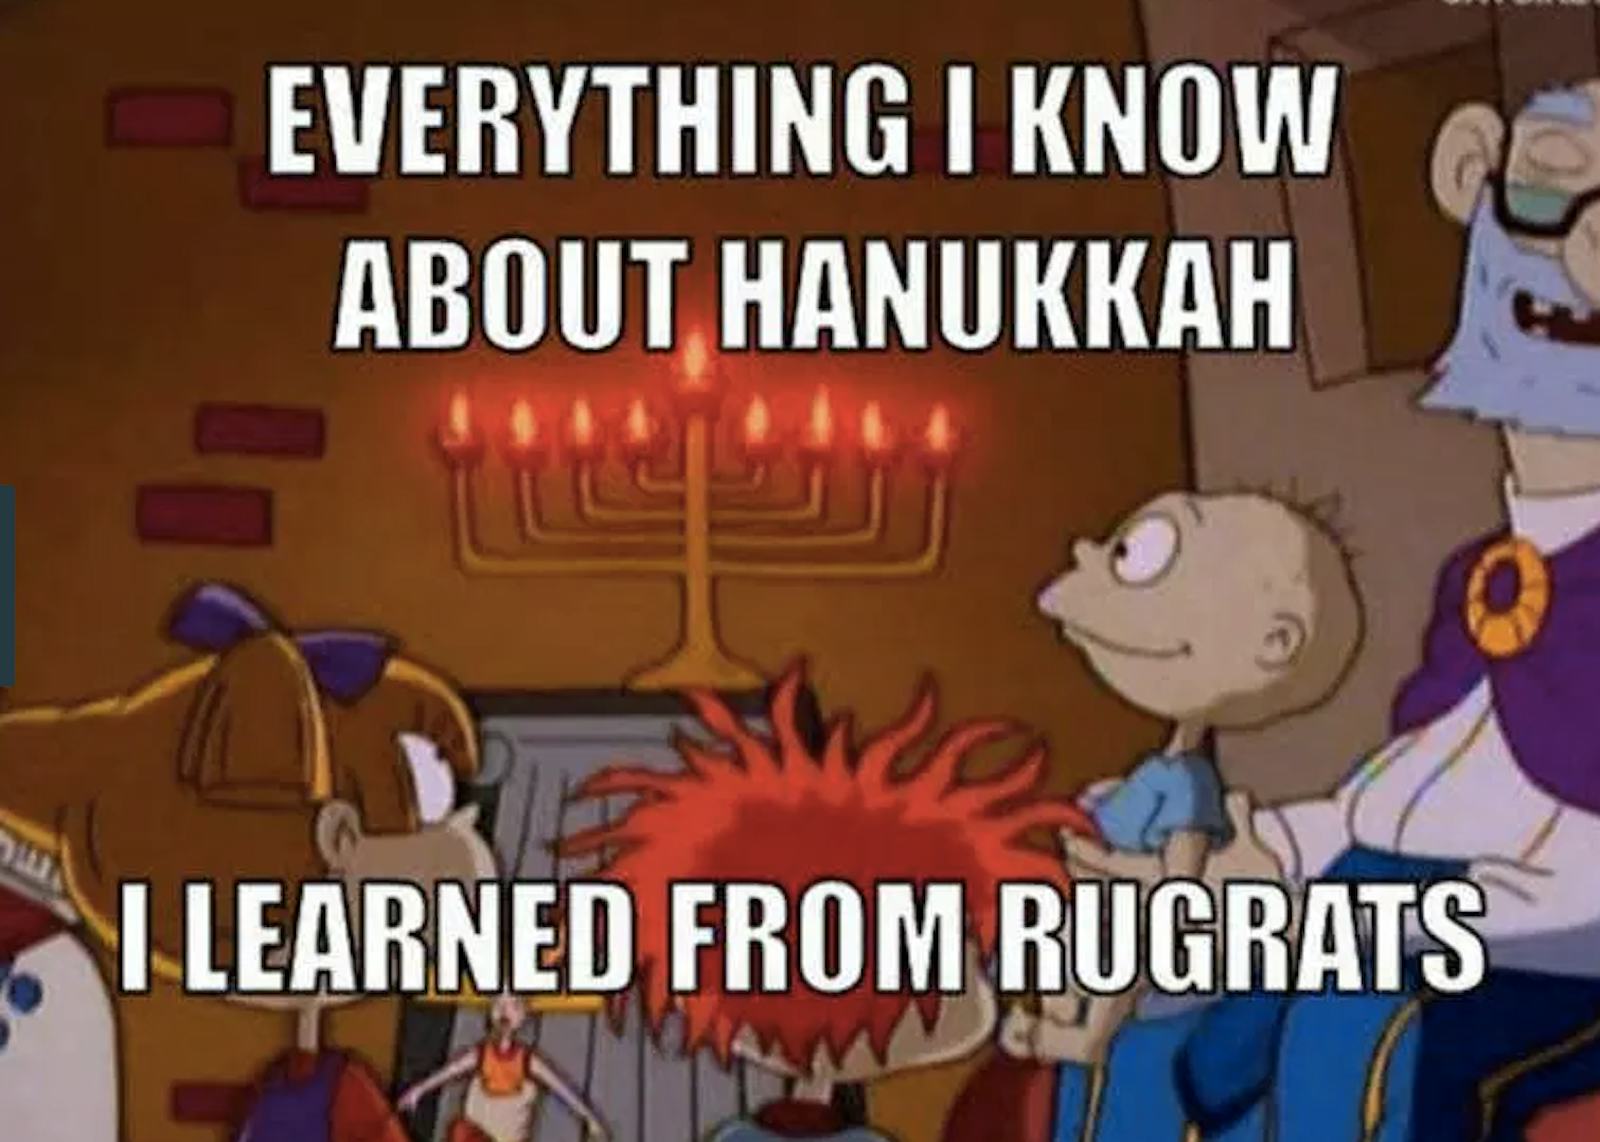 7 Hanukkah Memes That Will Keep The Fun Going All Season Long